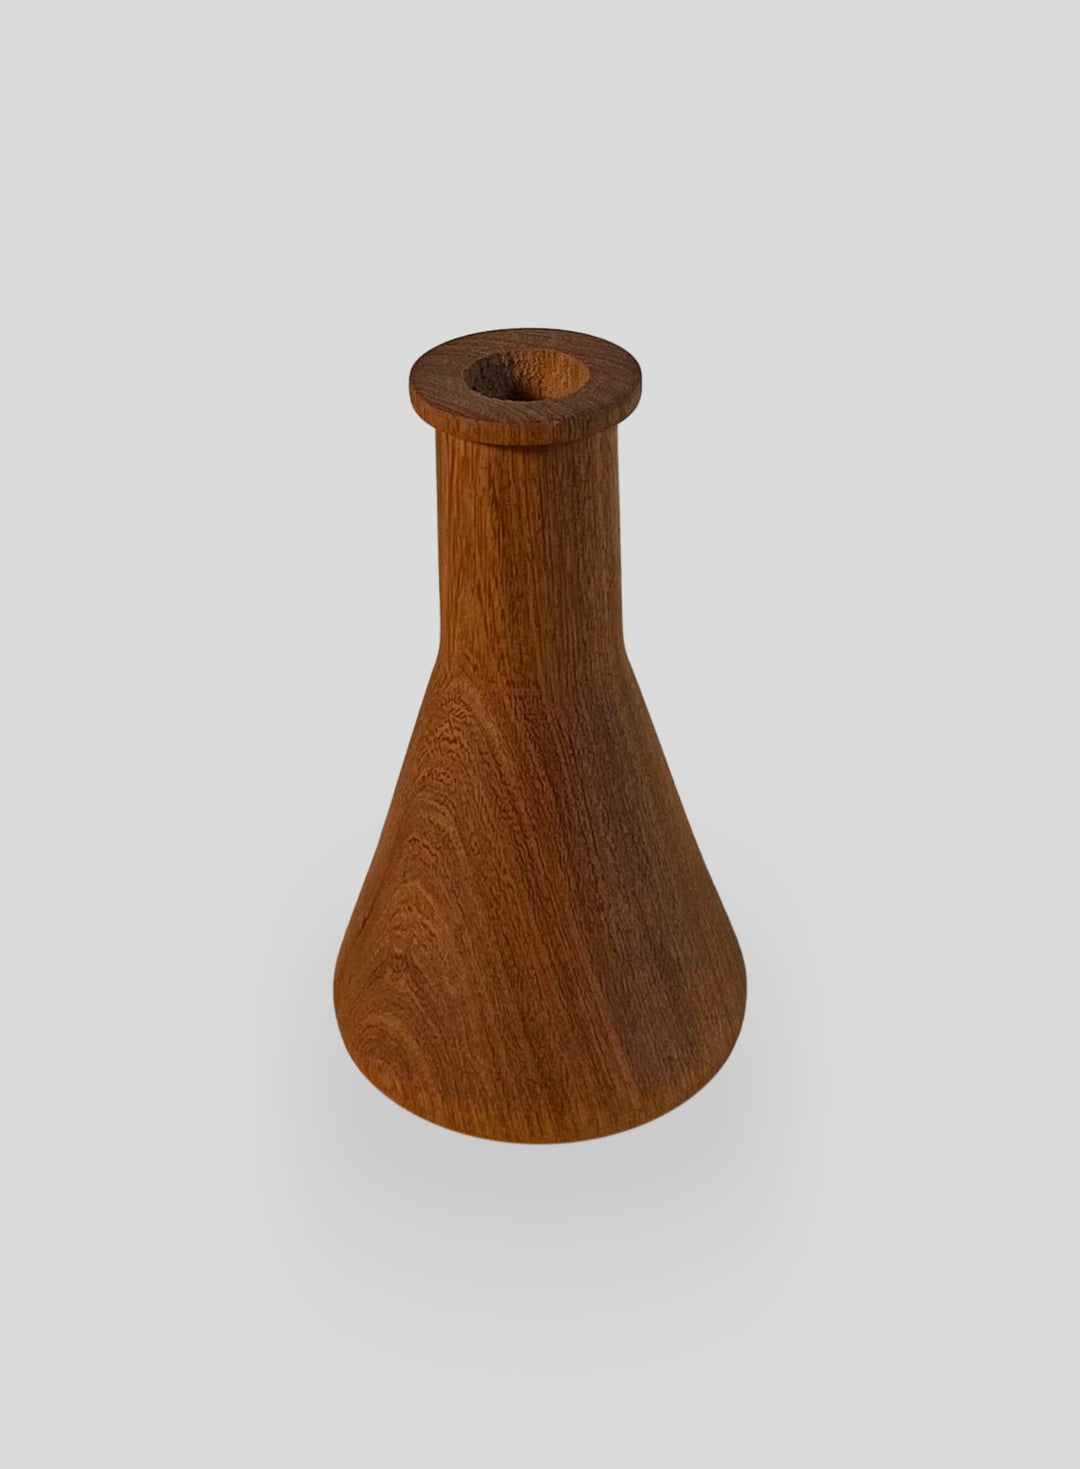 The Beaker Vase in Algarrobo